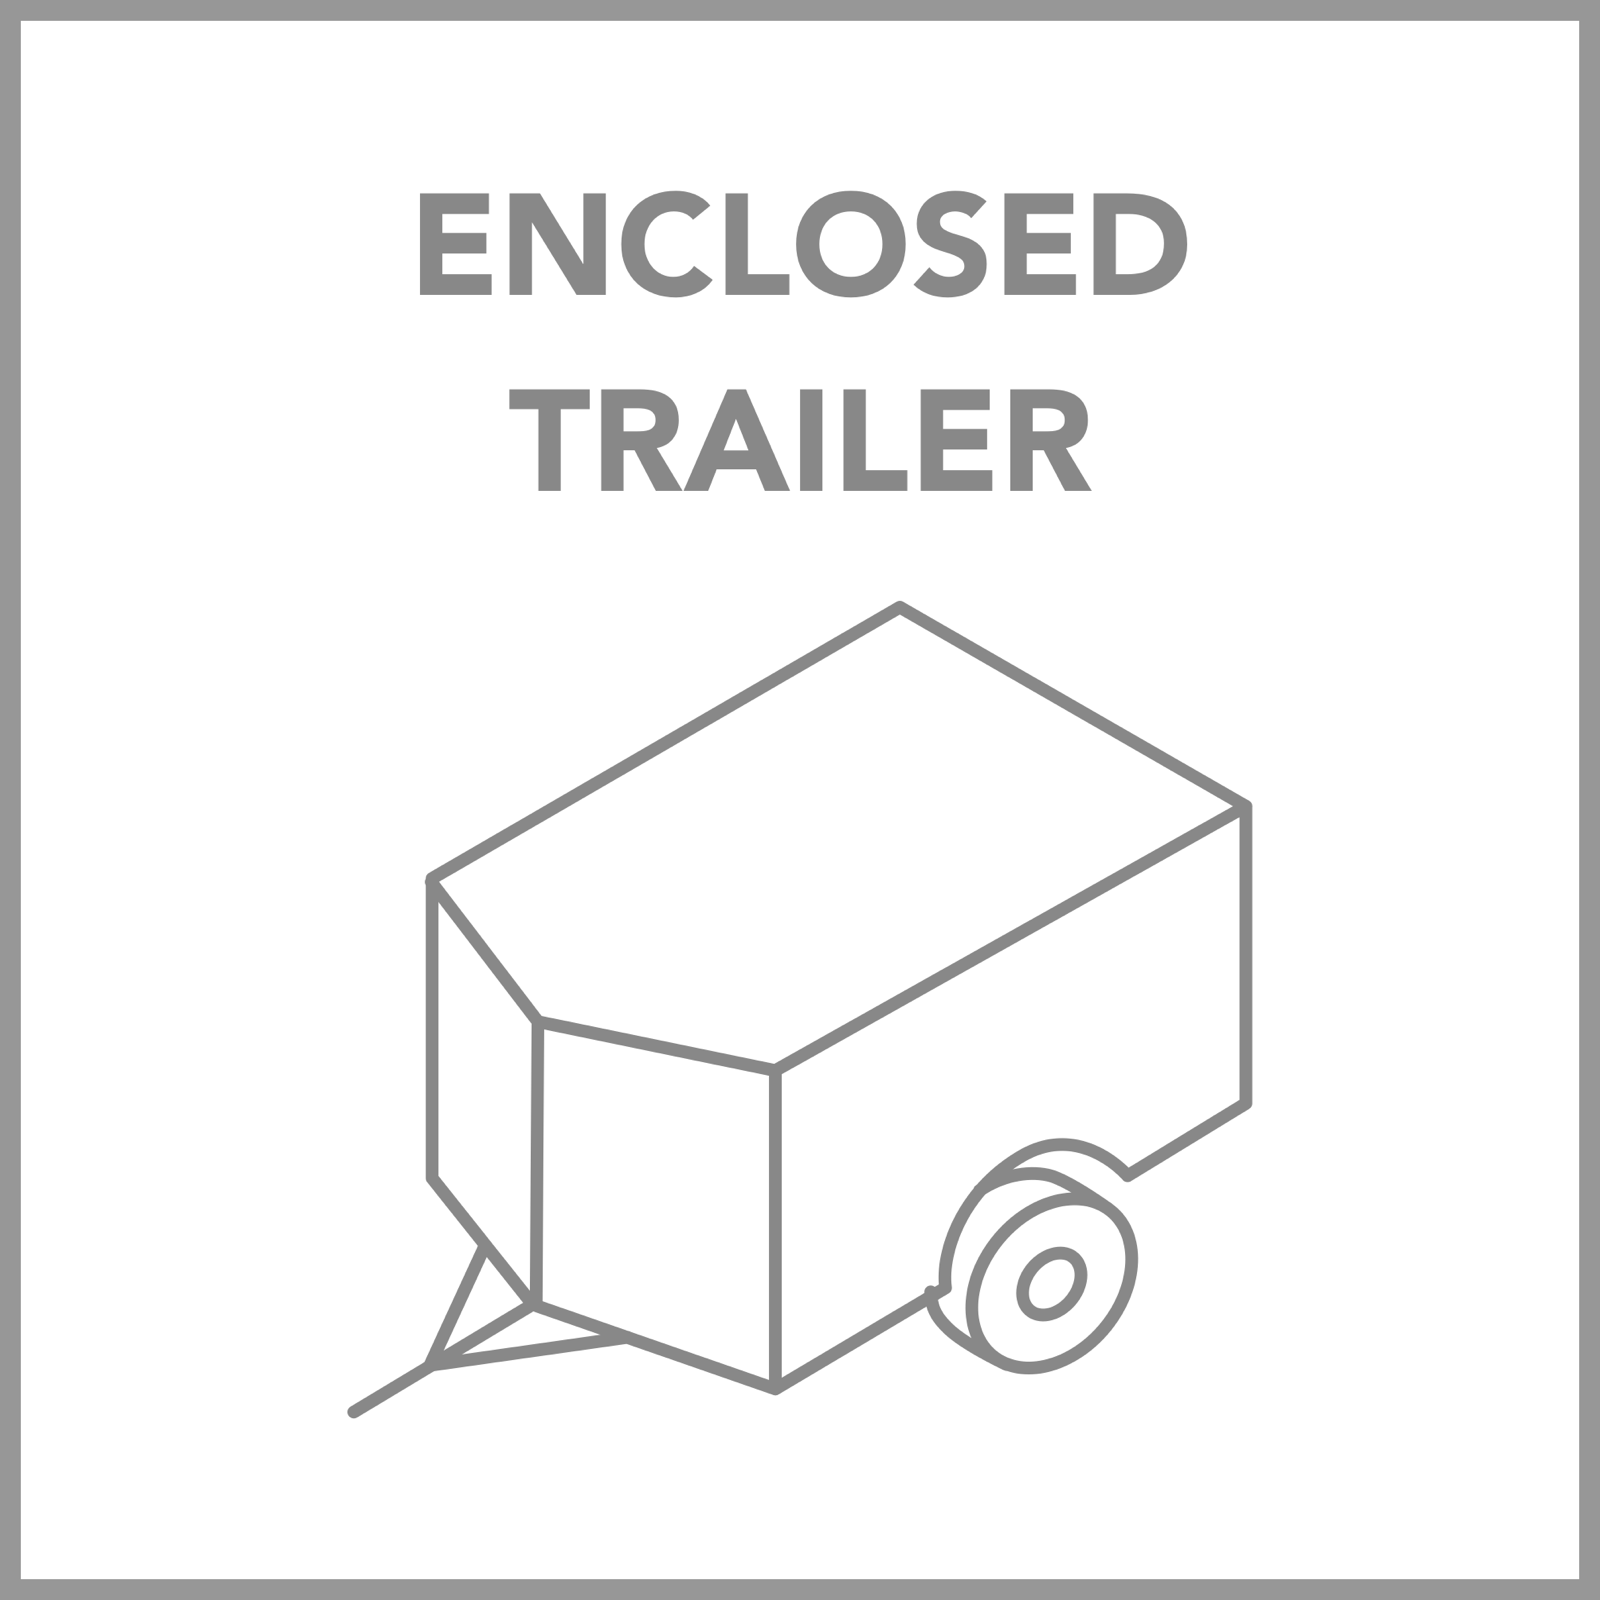 Enclosed Trailer